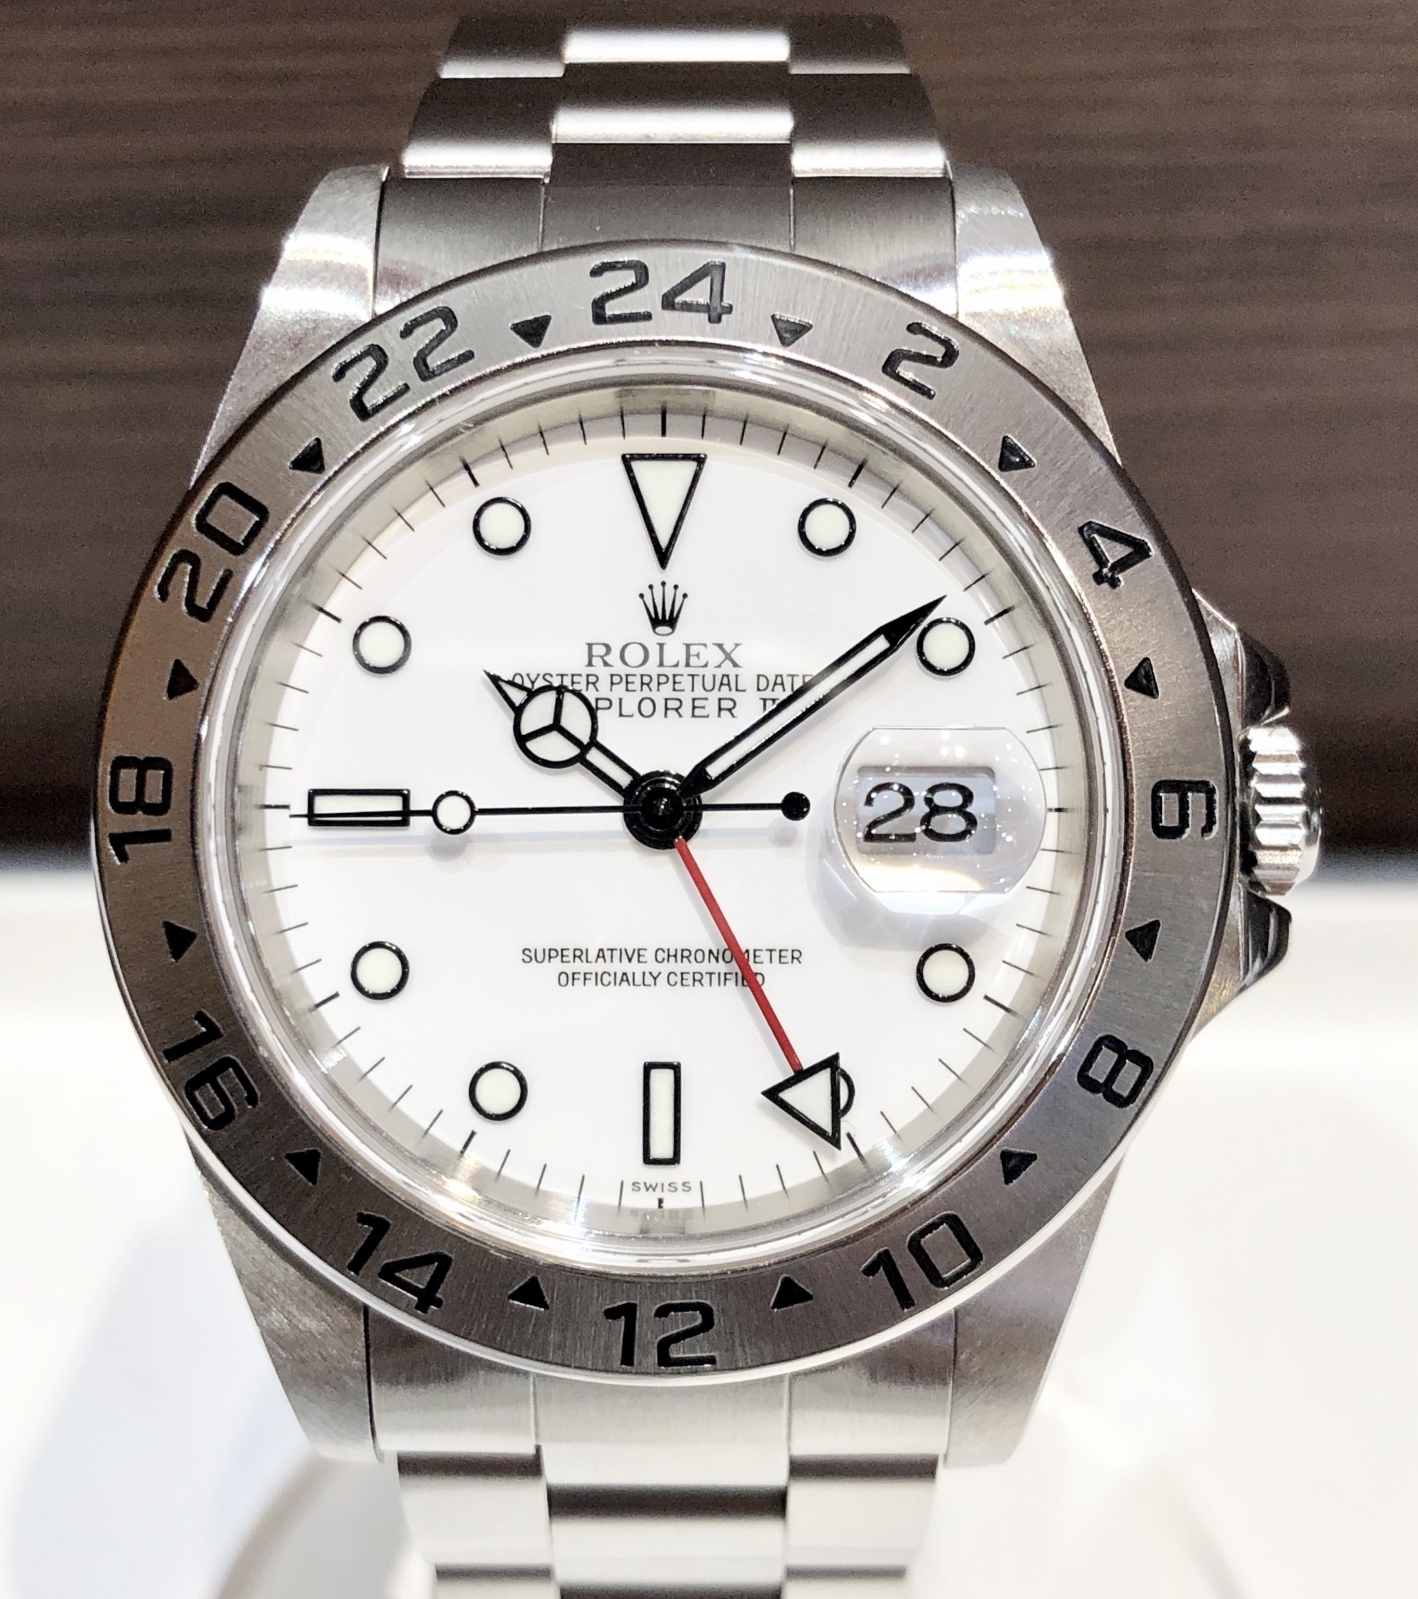 ロレックス ROLEX エクスプローラーⅡ オイスターパーペチュアル 腕時計 時計 SS 16570 メンズ